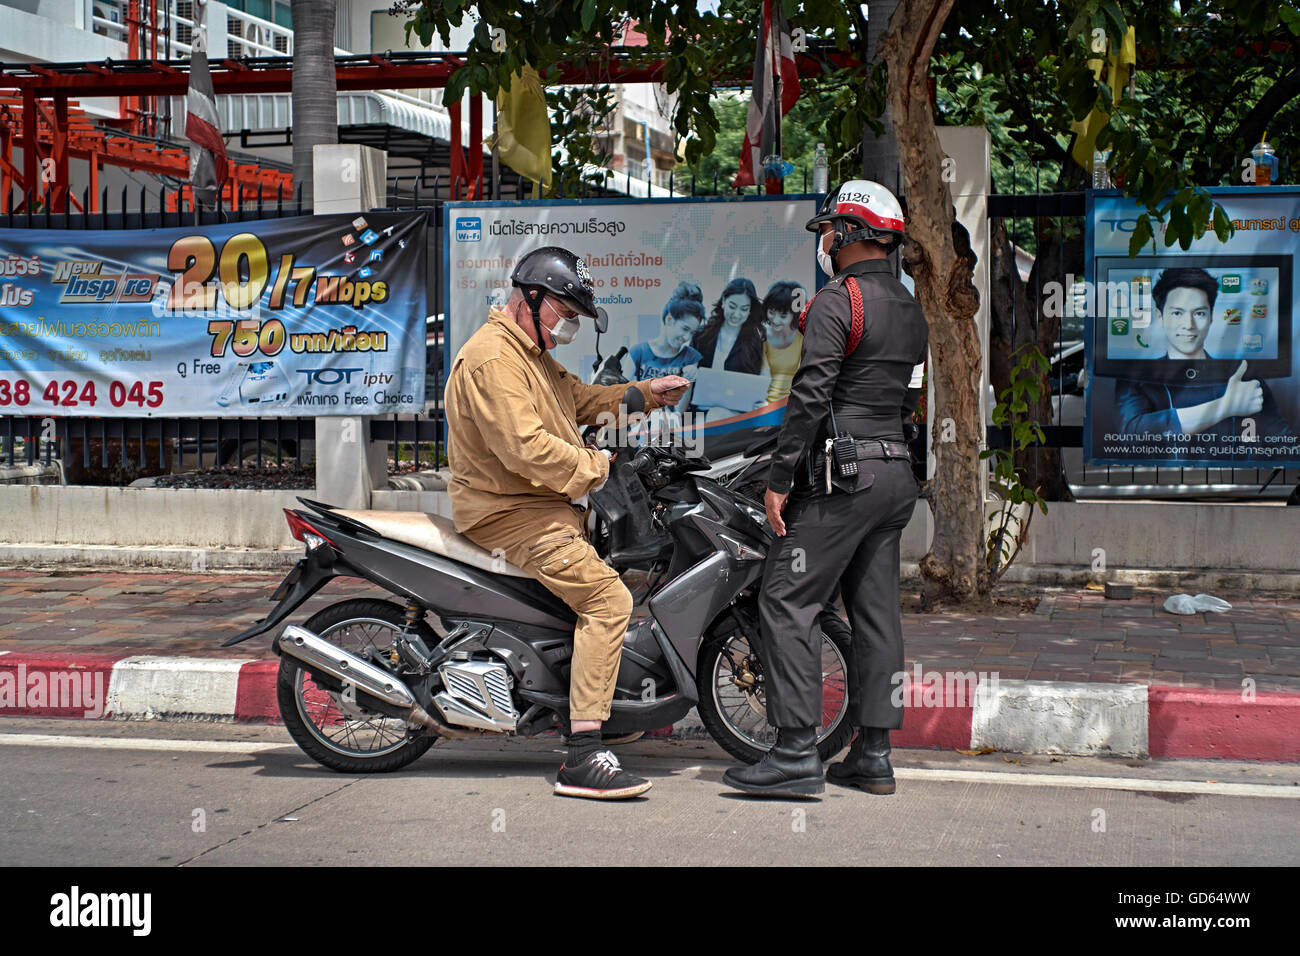 Polizei Thailand. Motorradfahrer wurde wegen Verkehrsverstößen vom thailändischen Polizeibeamten angehalten. Thailand S. E. Asien Stockfoto